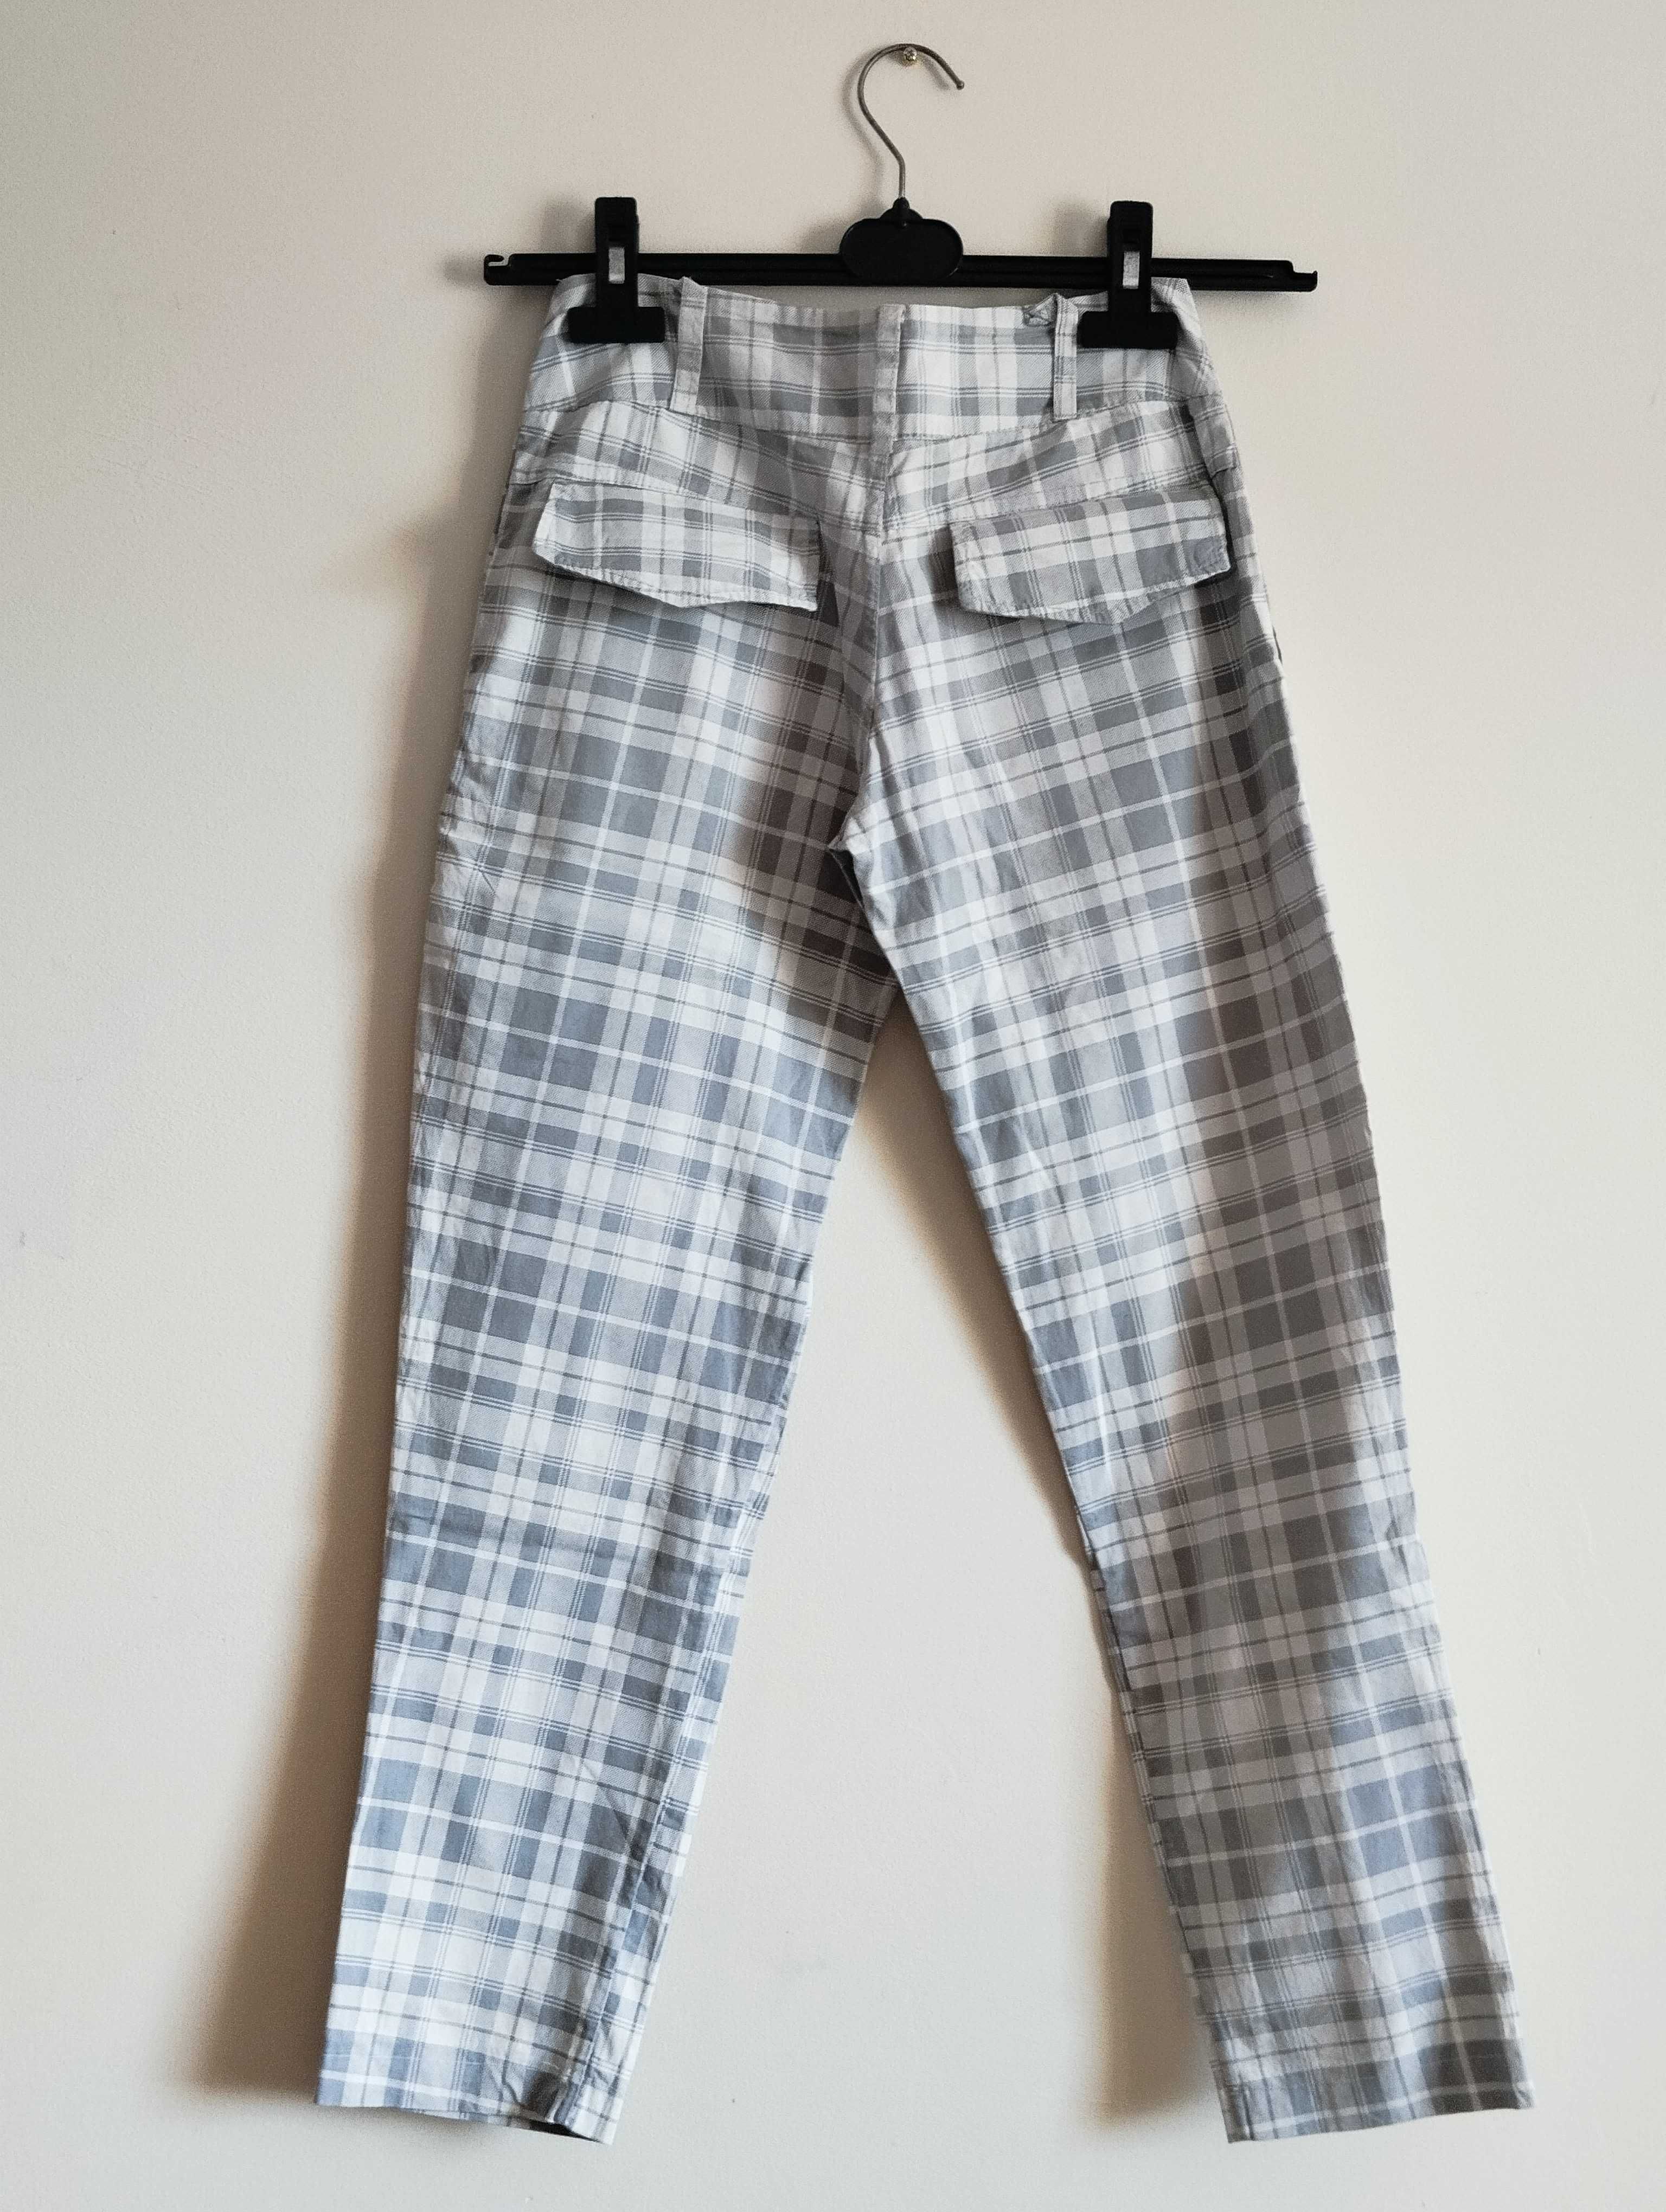 Spodnie chinosy biodrówki wykonane z bawełny